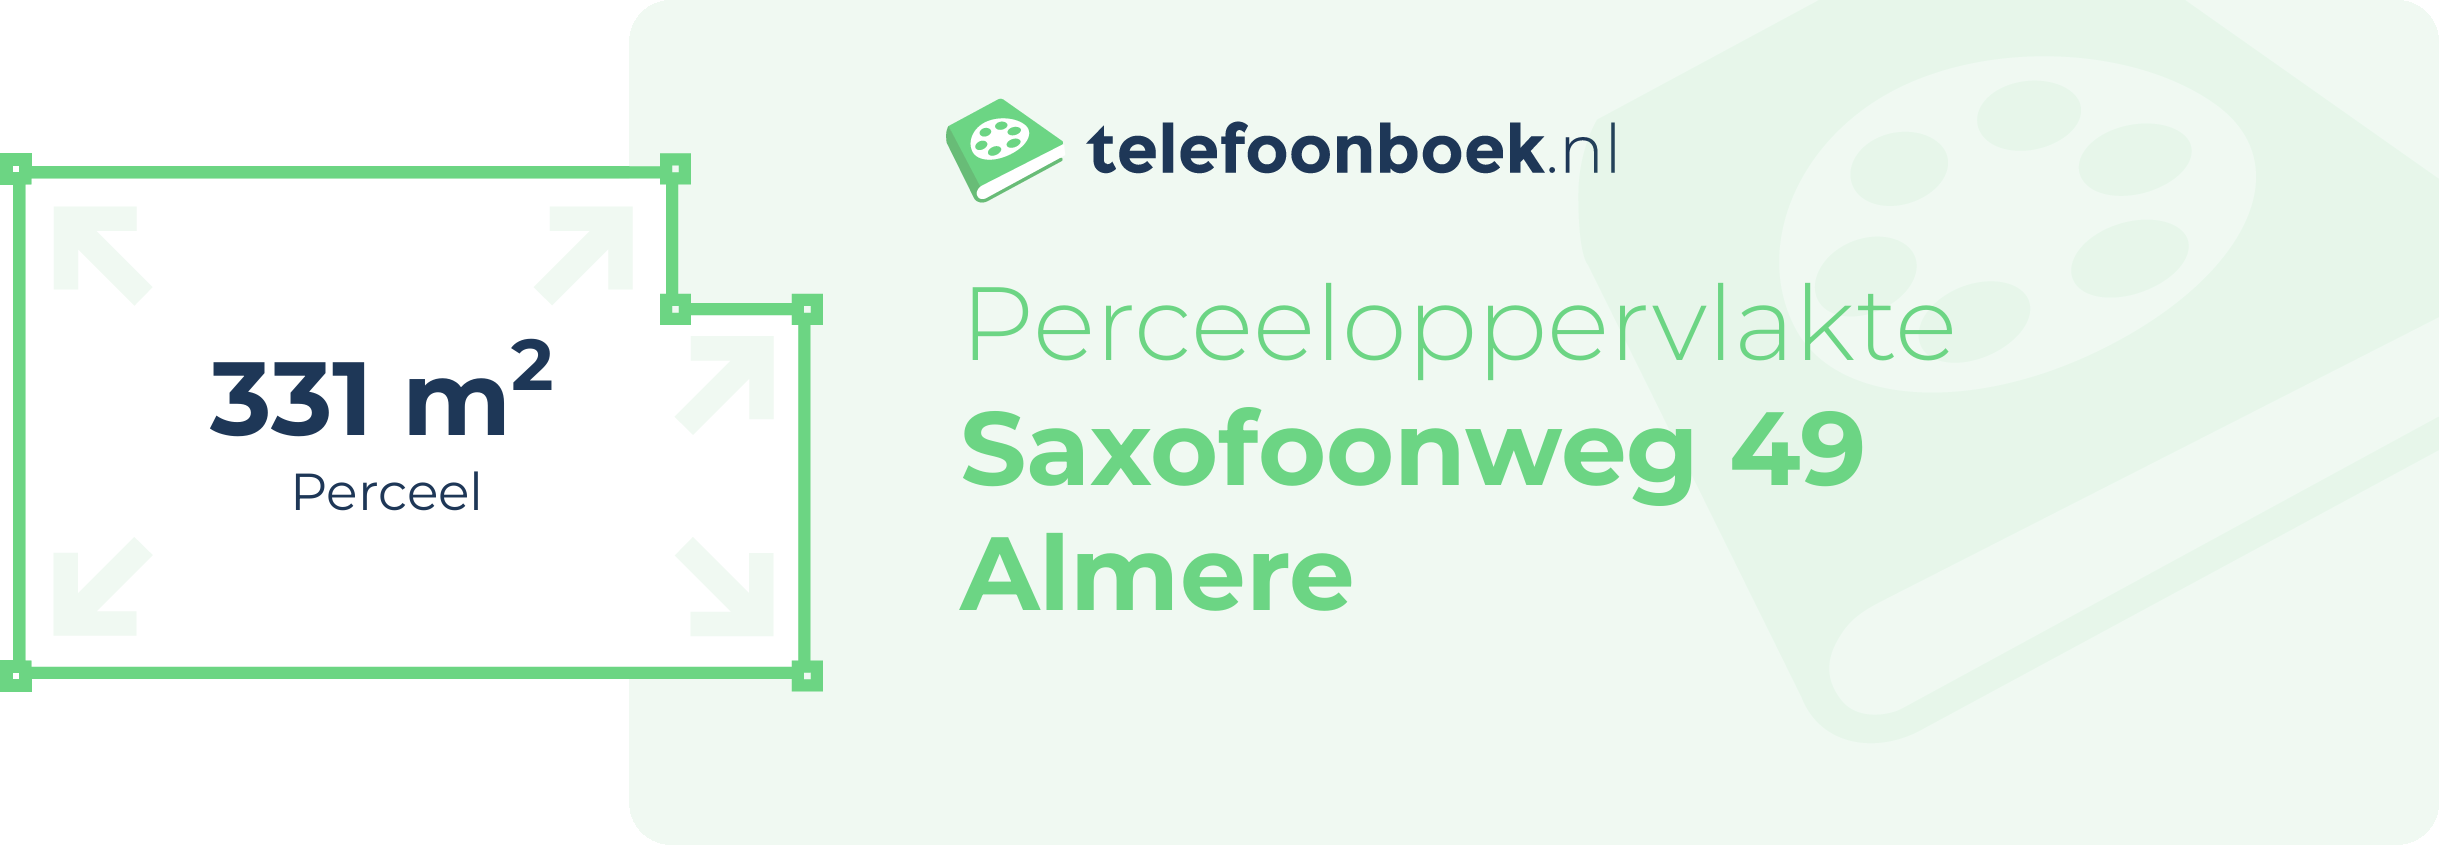 Perceeloppervlakte Saxofoonweg 49 Almere